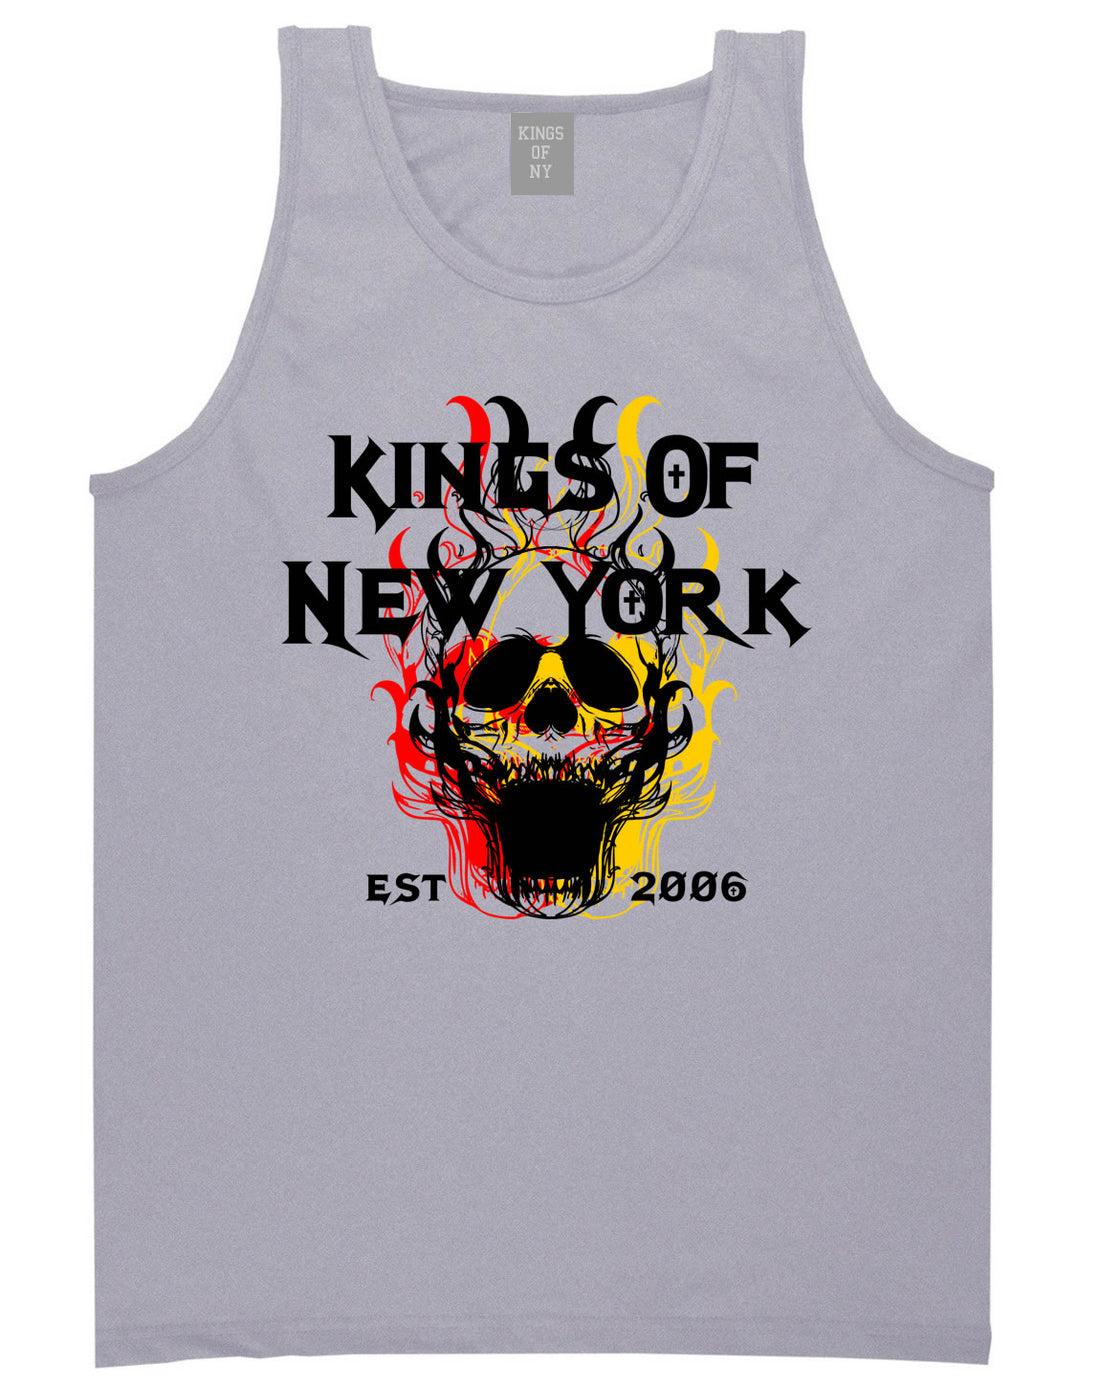 Kings Of New York Burning Skulls Mens Tank Top Shirt Grey By Kings Of NY